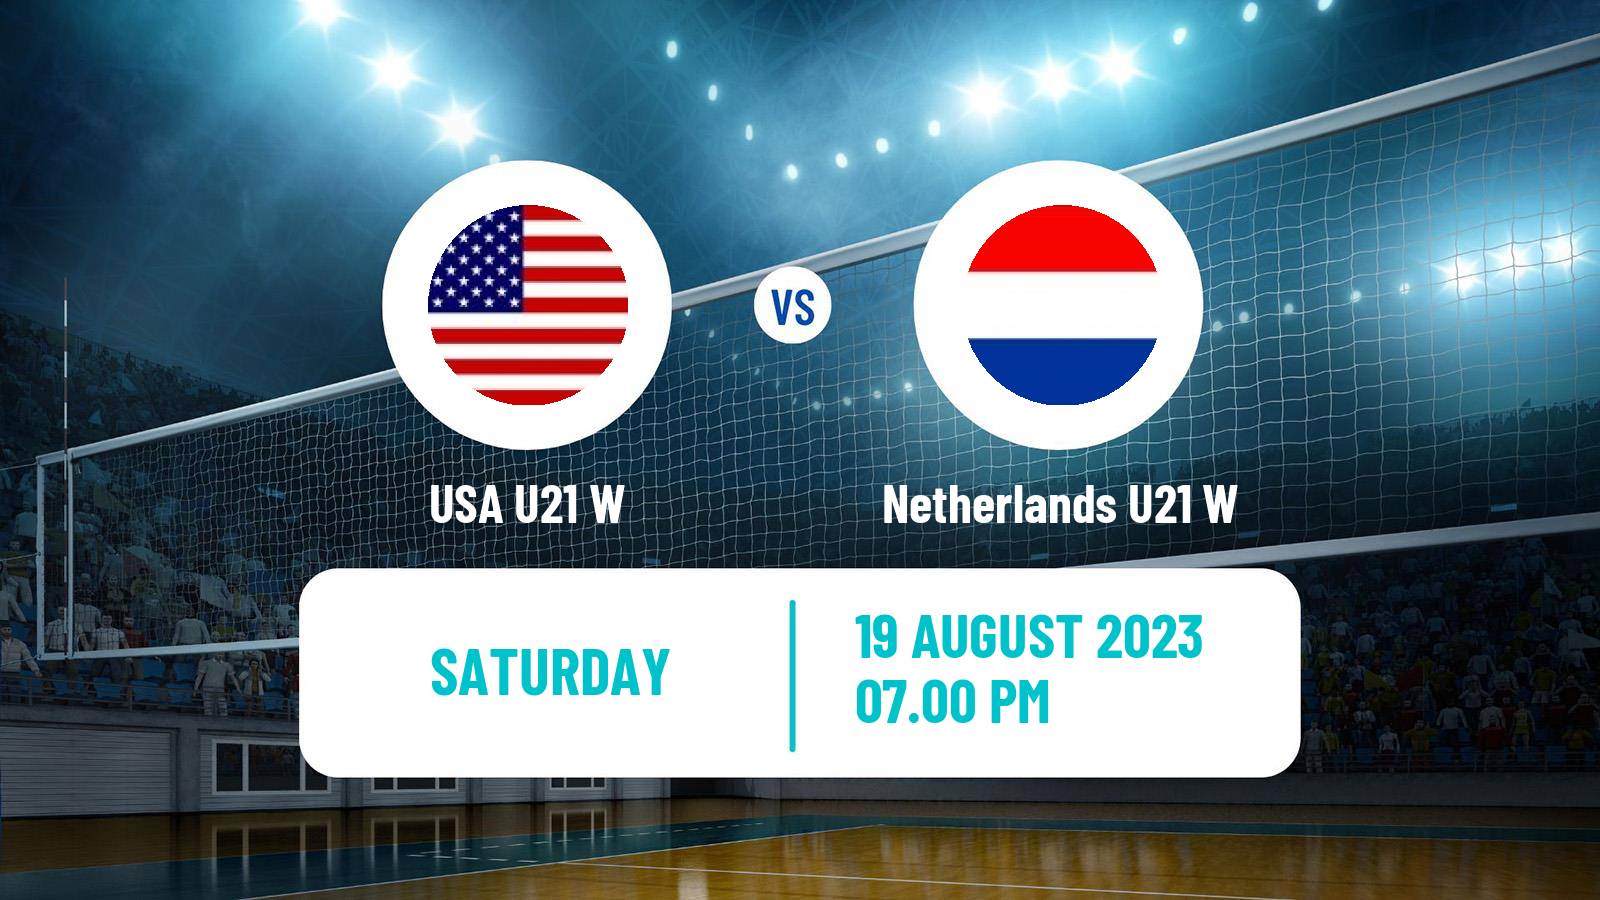 Volleyball World Championship U21 Volleyball Women USA U21 W - Netherlands U21 W